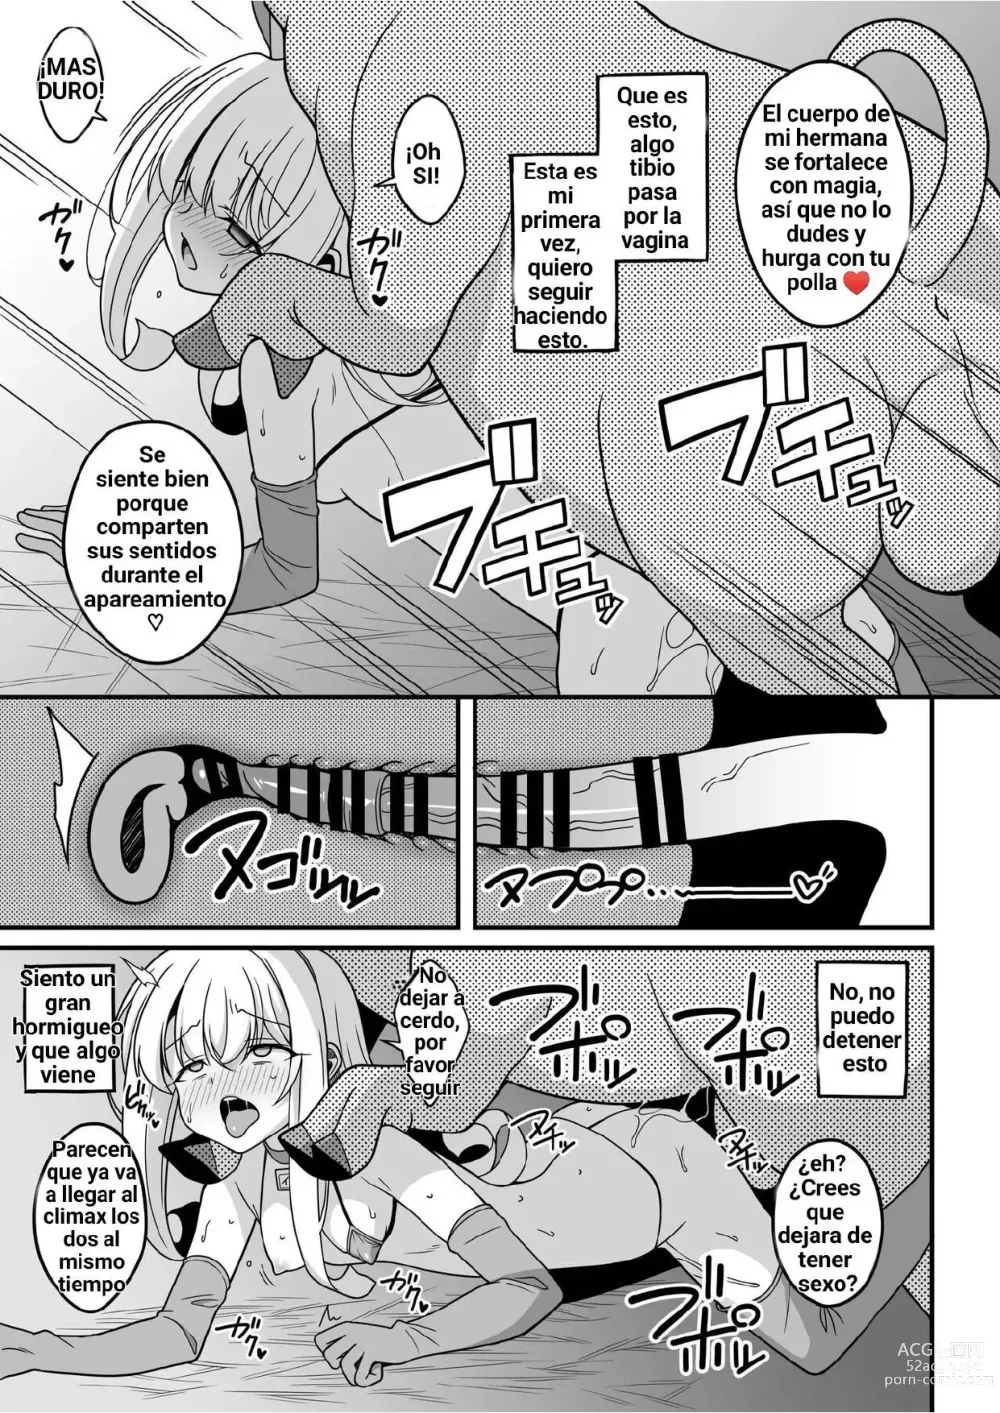 Page 5 of doujinshi Nos han cambiado de cuerpo